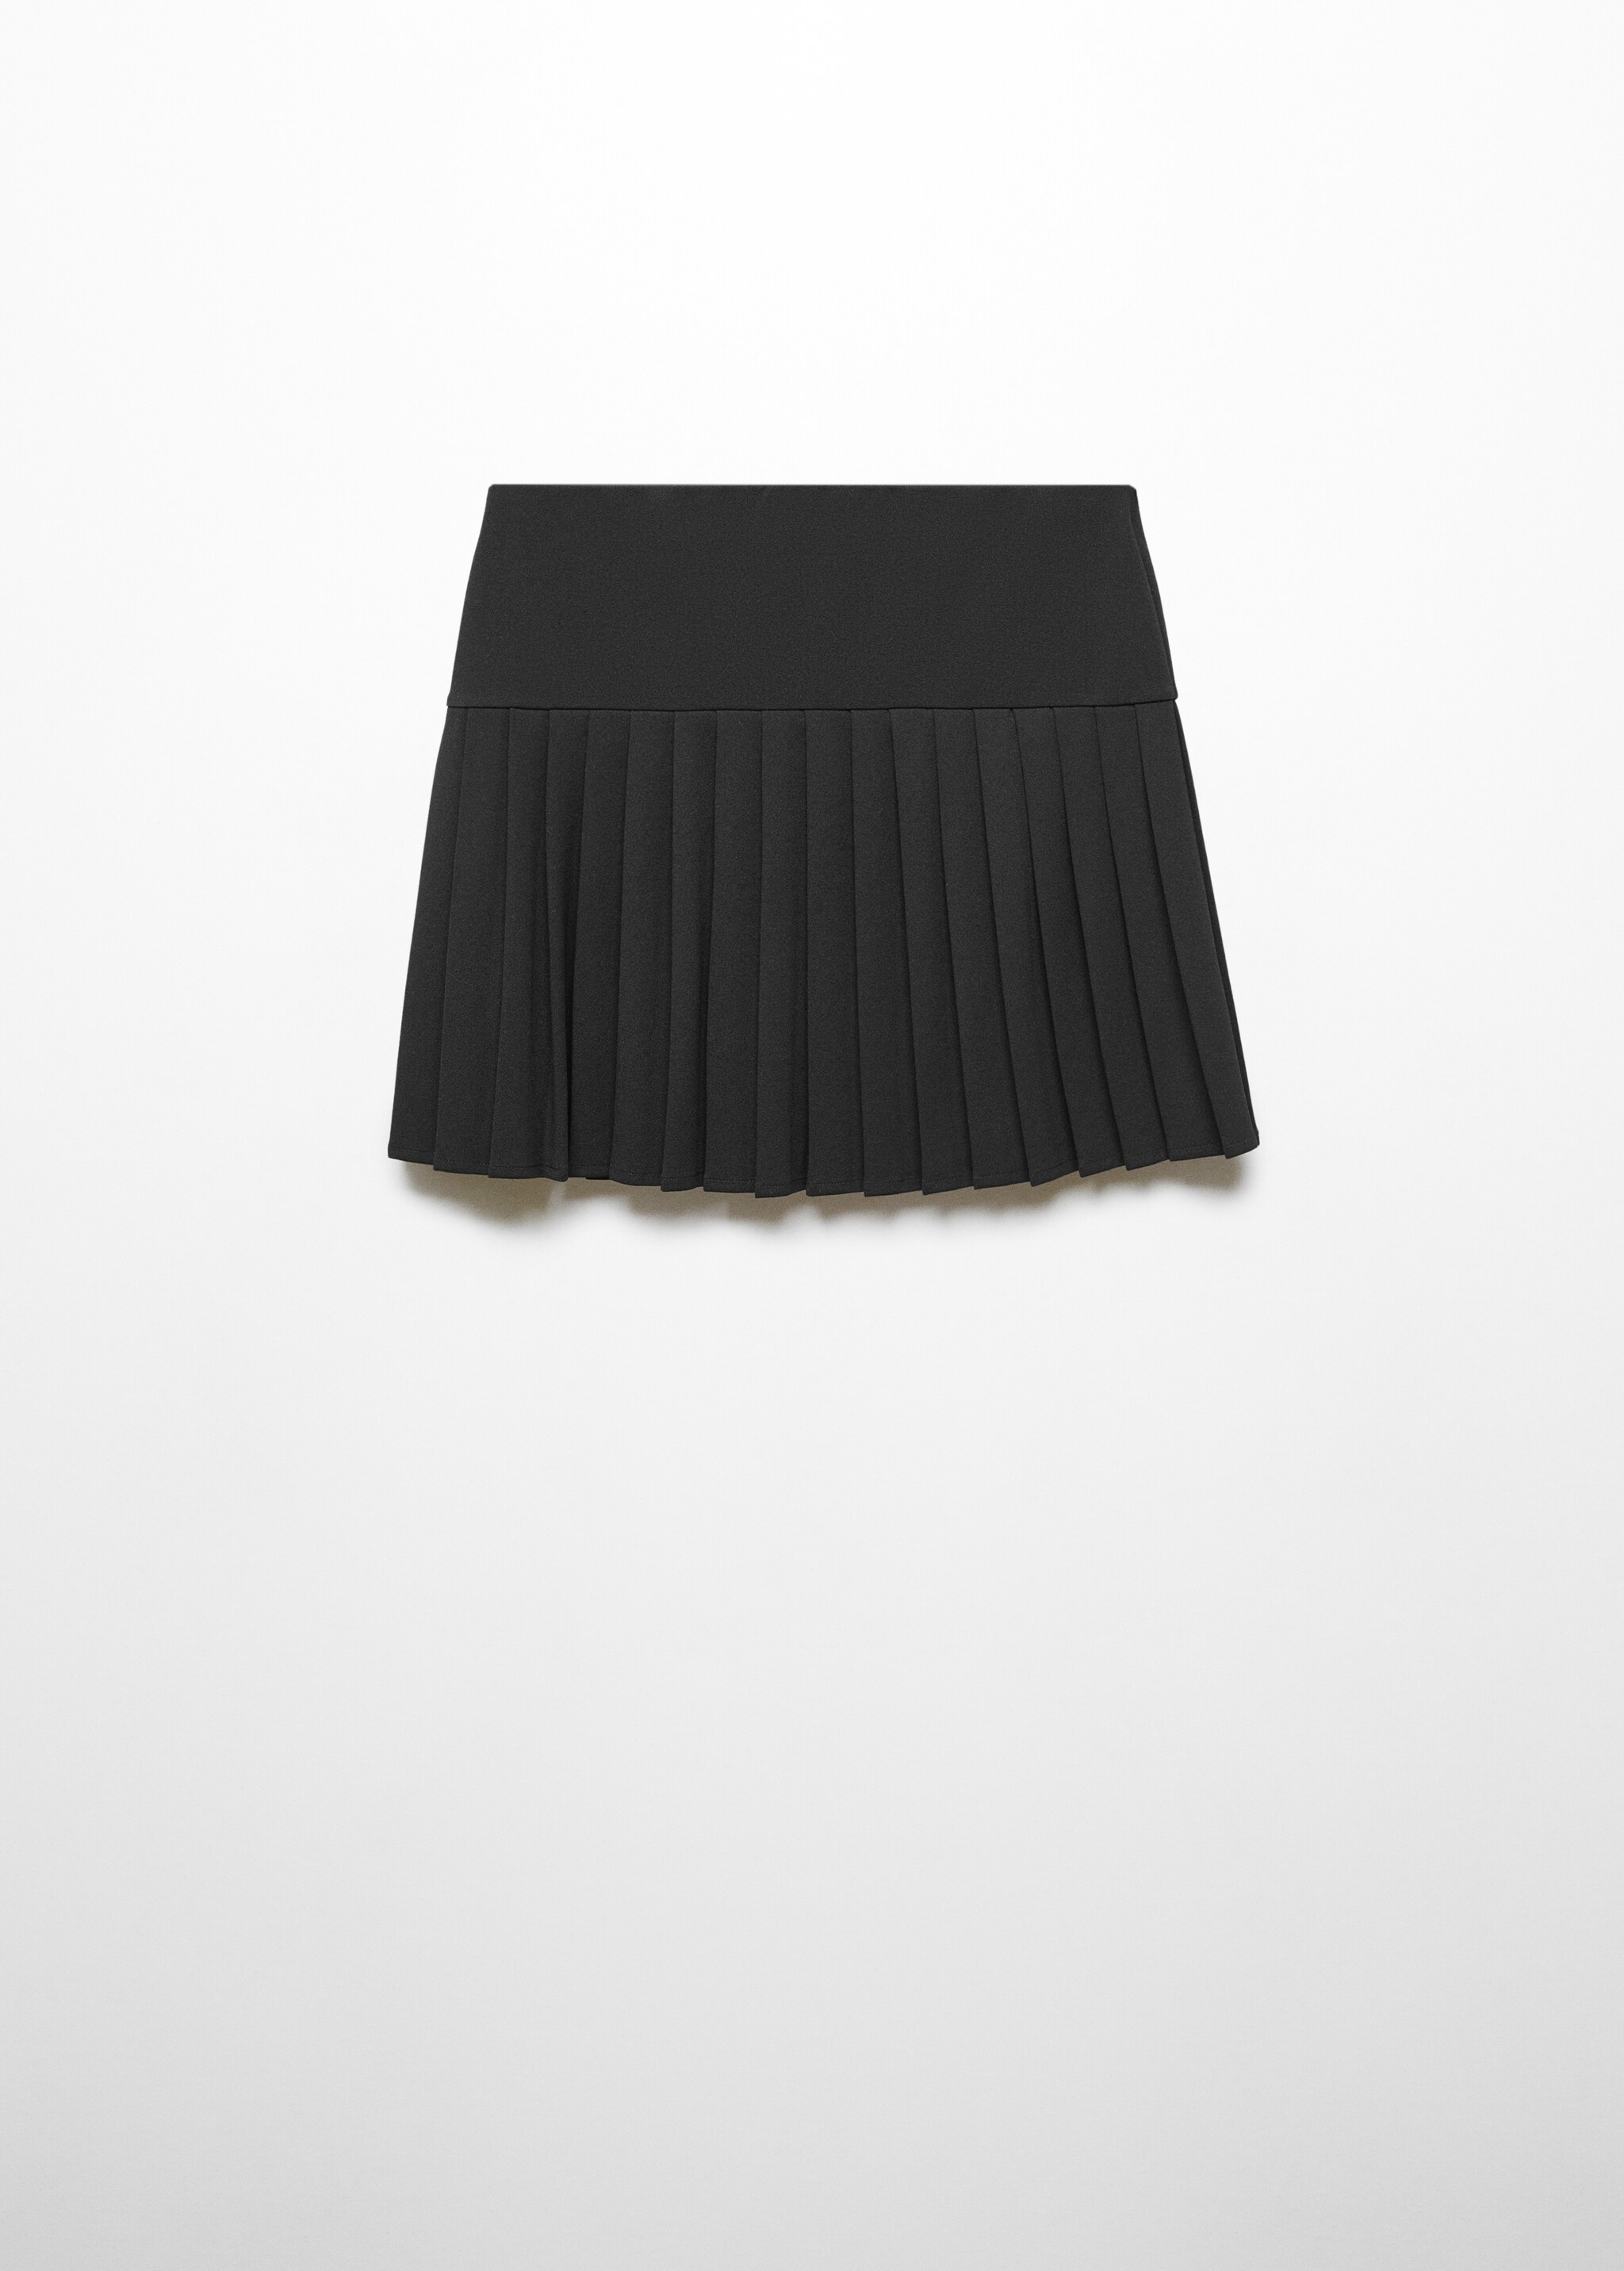 Minifalda tablas - Artículo sin modelo